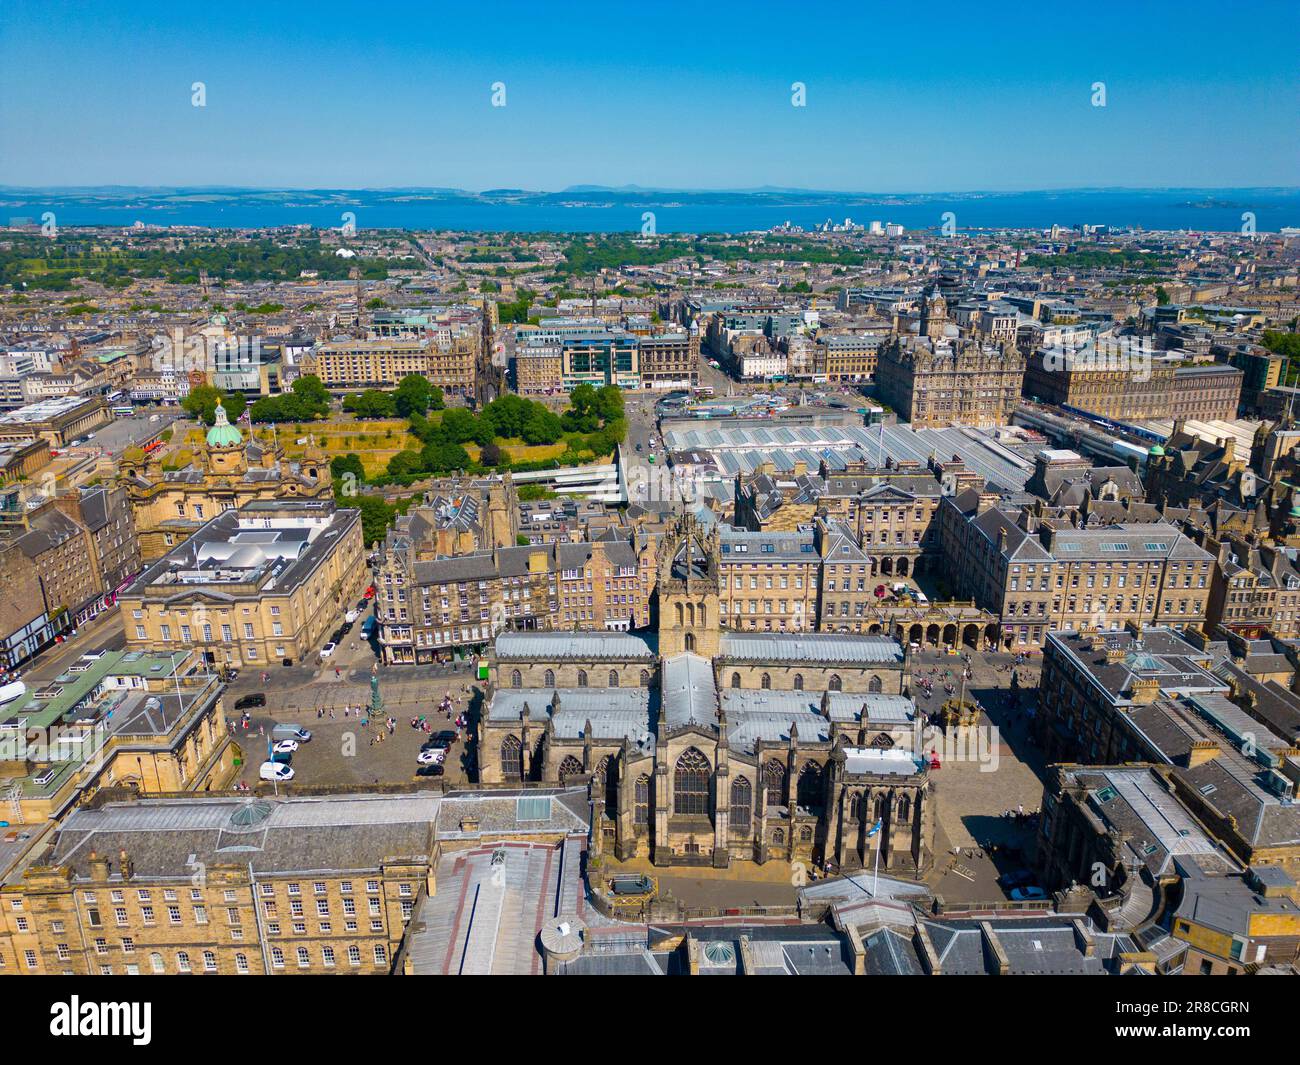 Vue aérienne de la cathédrale St Giles dans la vieille ville d'Édimbourg, site classé au patrimoine mondial de l'UNESCO, Écosse, Royaume-Uni Banque D'Images